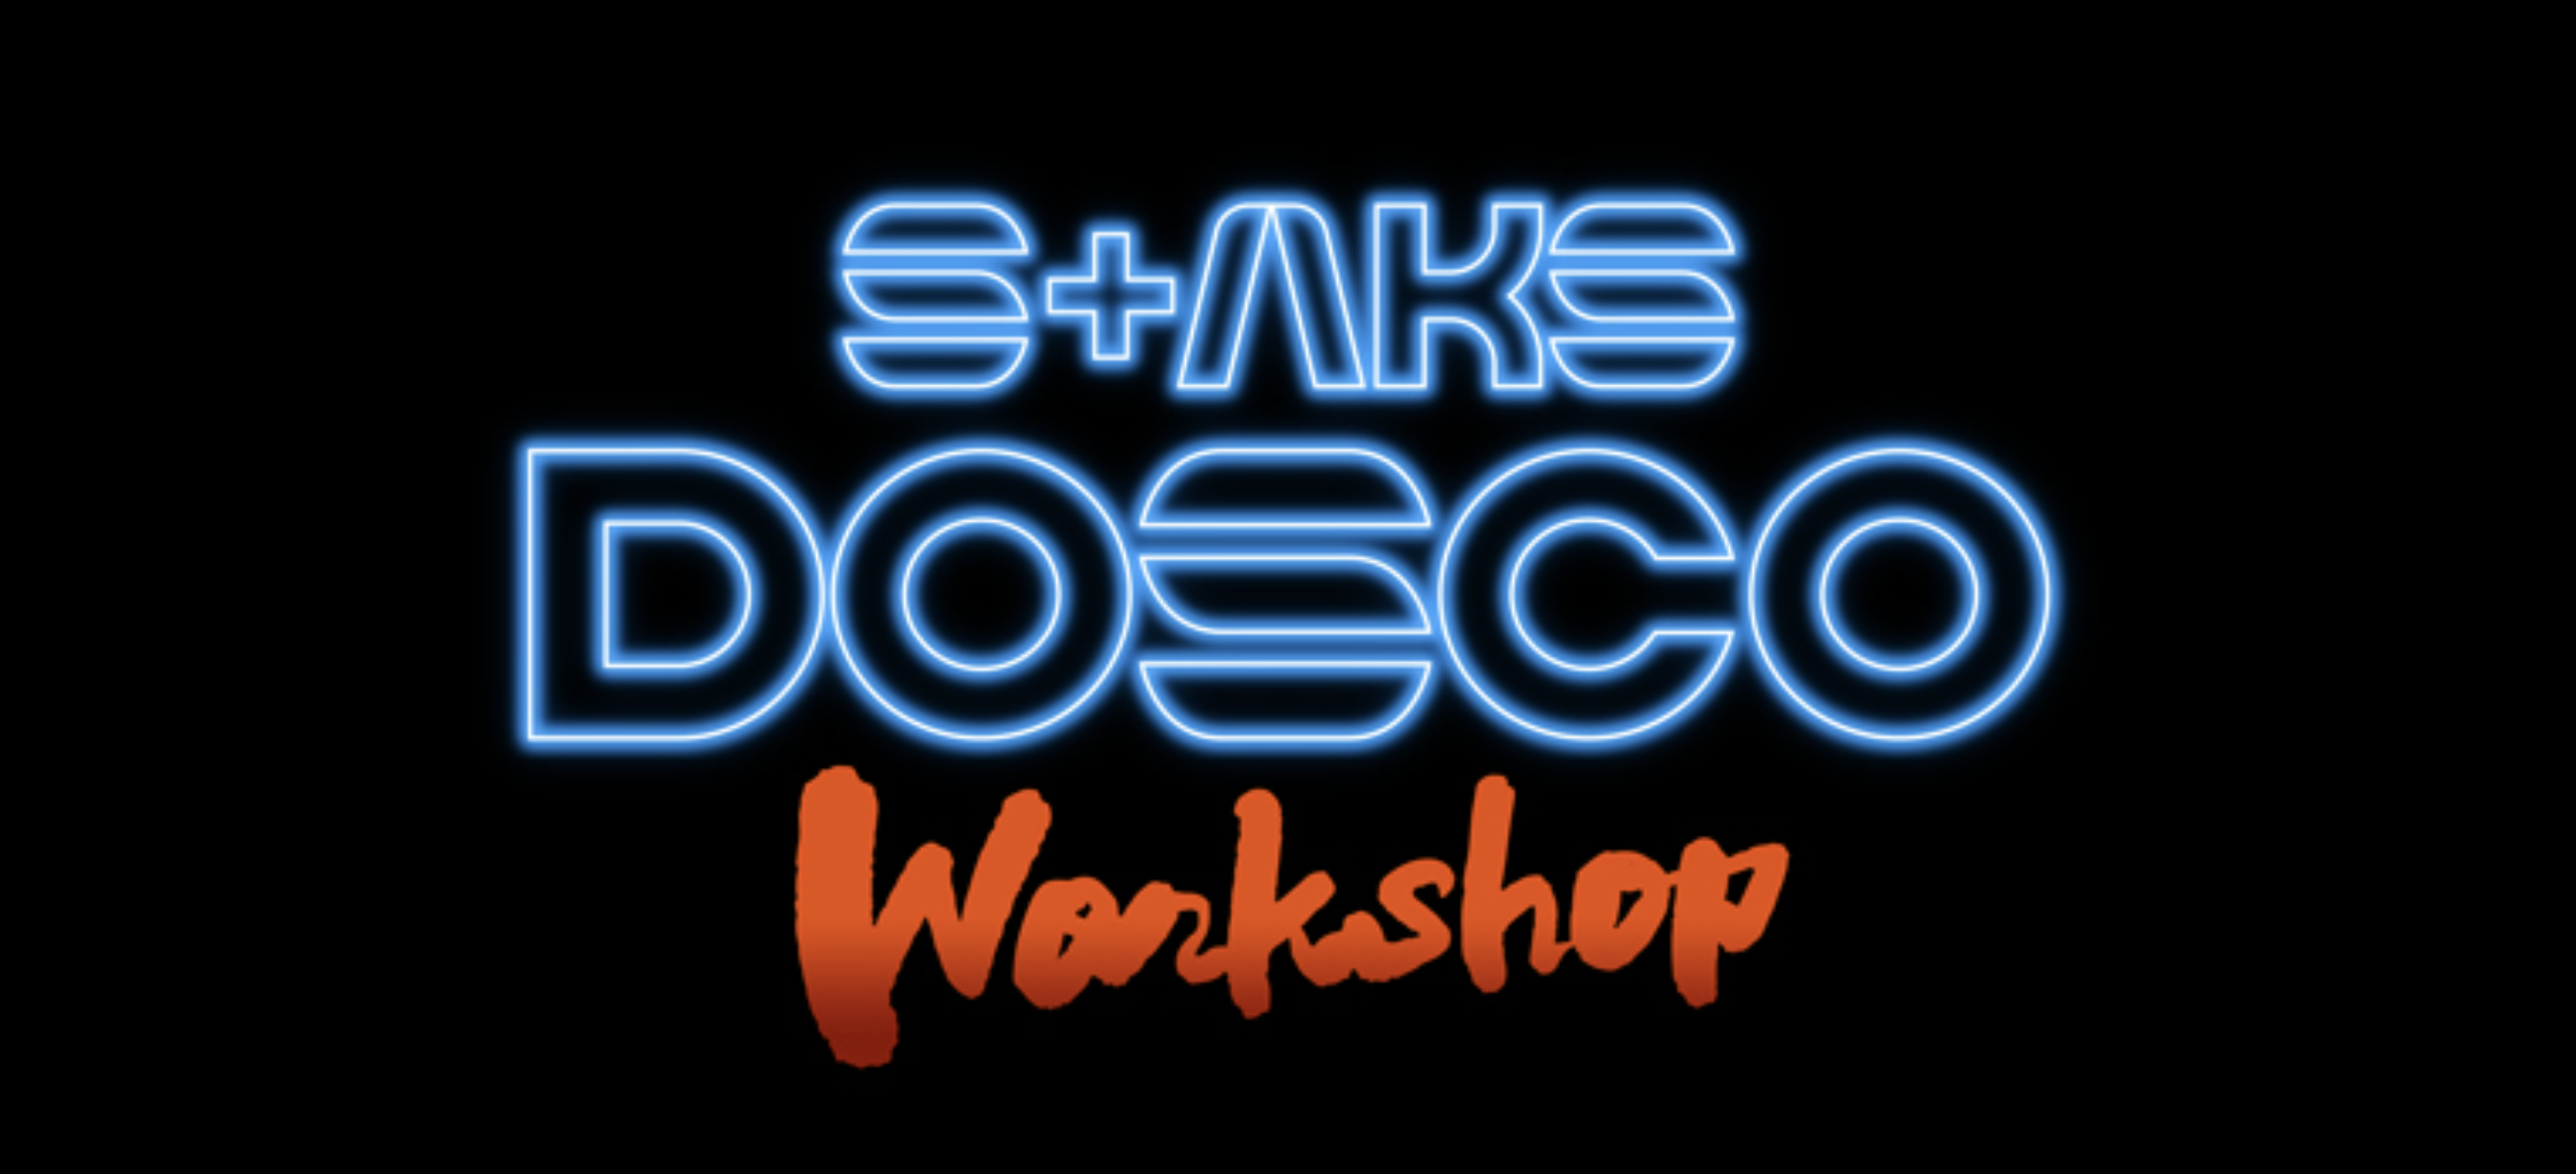 DOSCO WORKSHOP開催スケジュール＆お申込み方法について